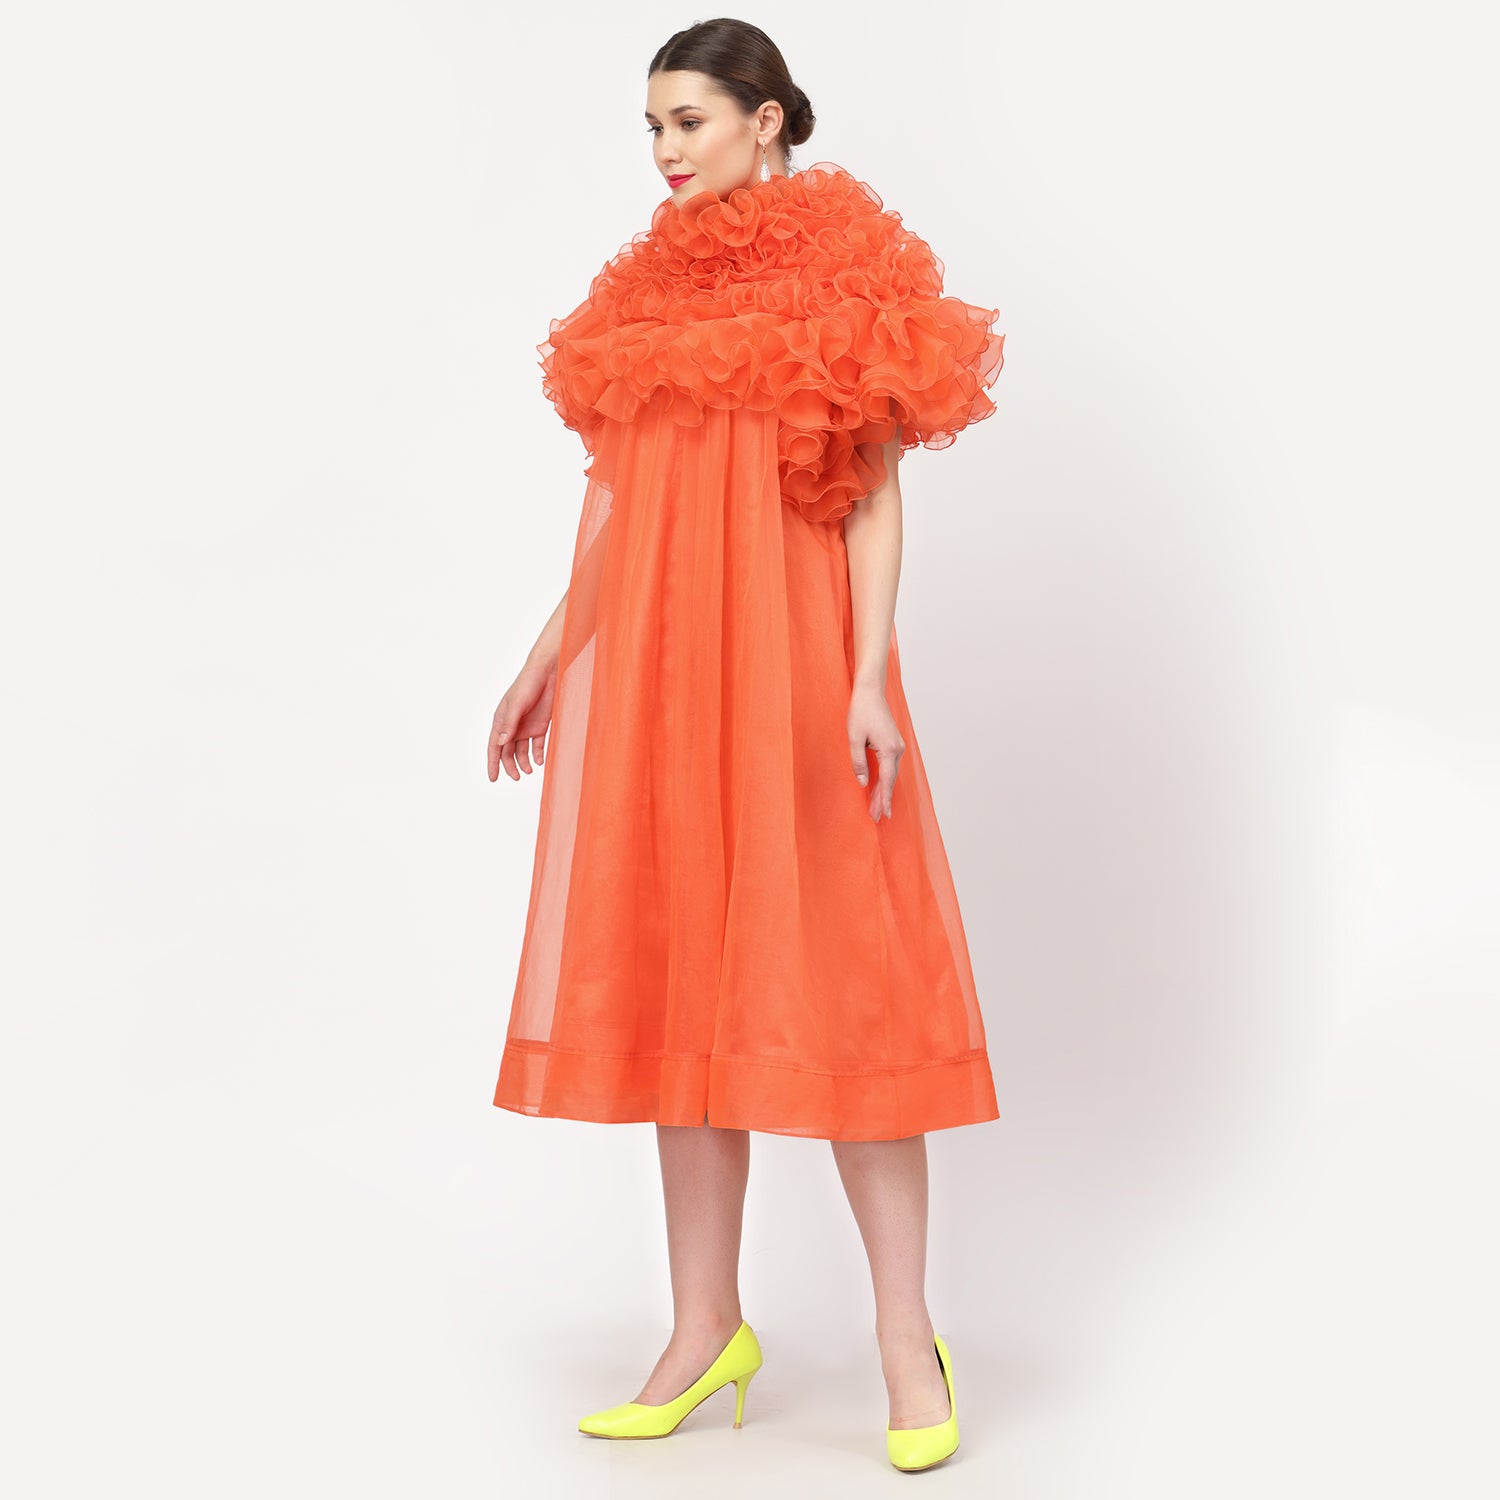 Neon Orange Organza Dress With Frill Cape Collar